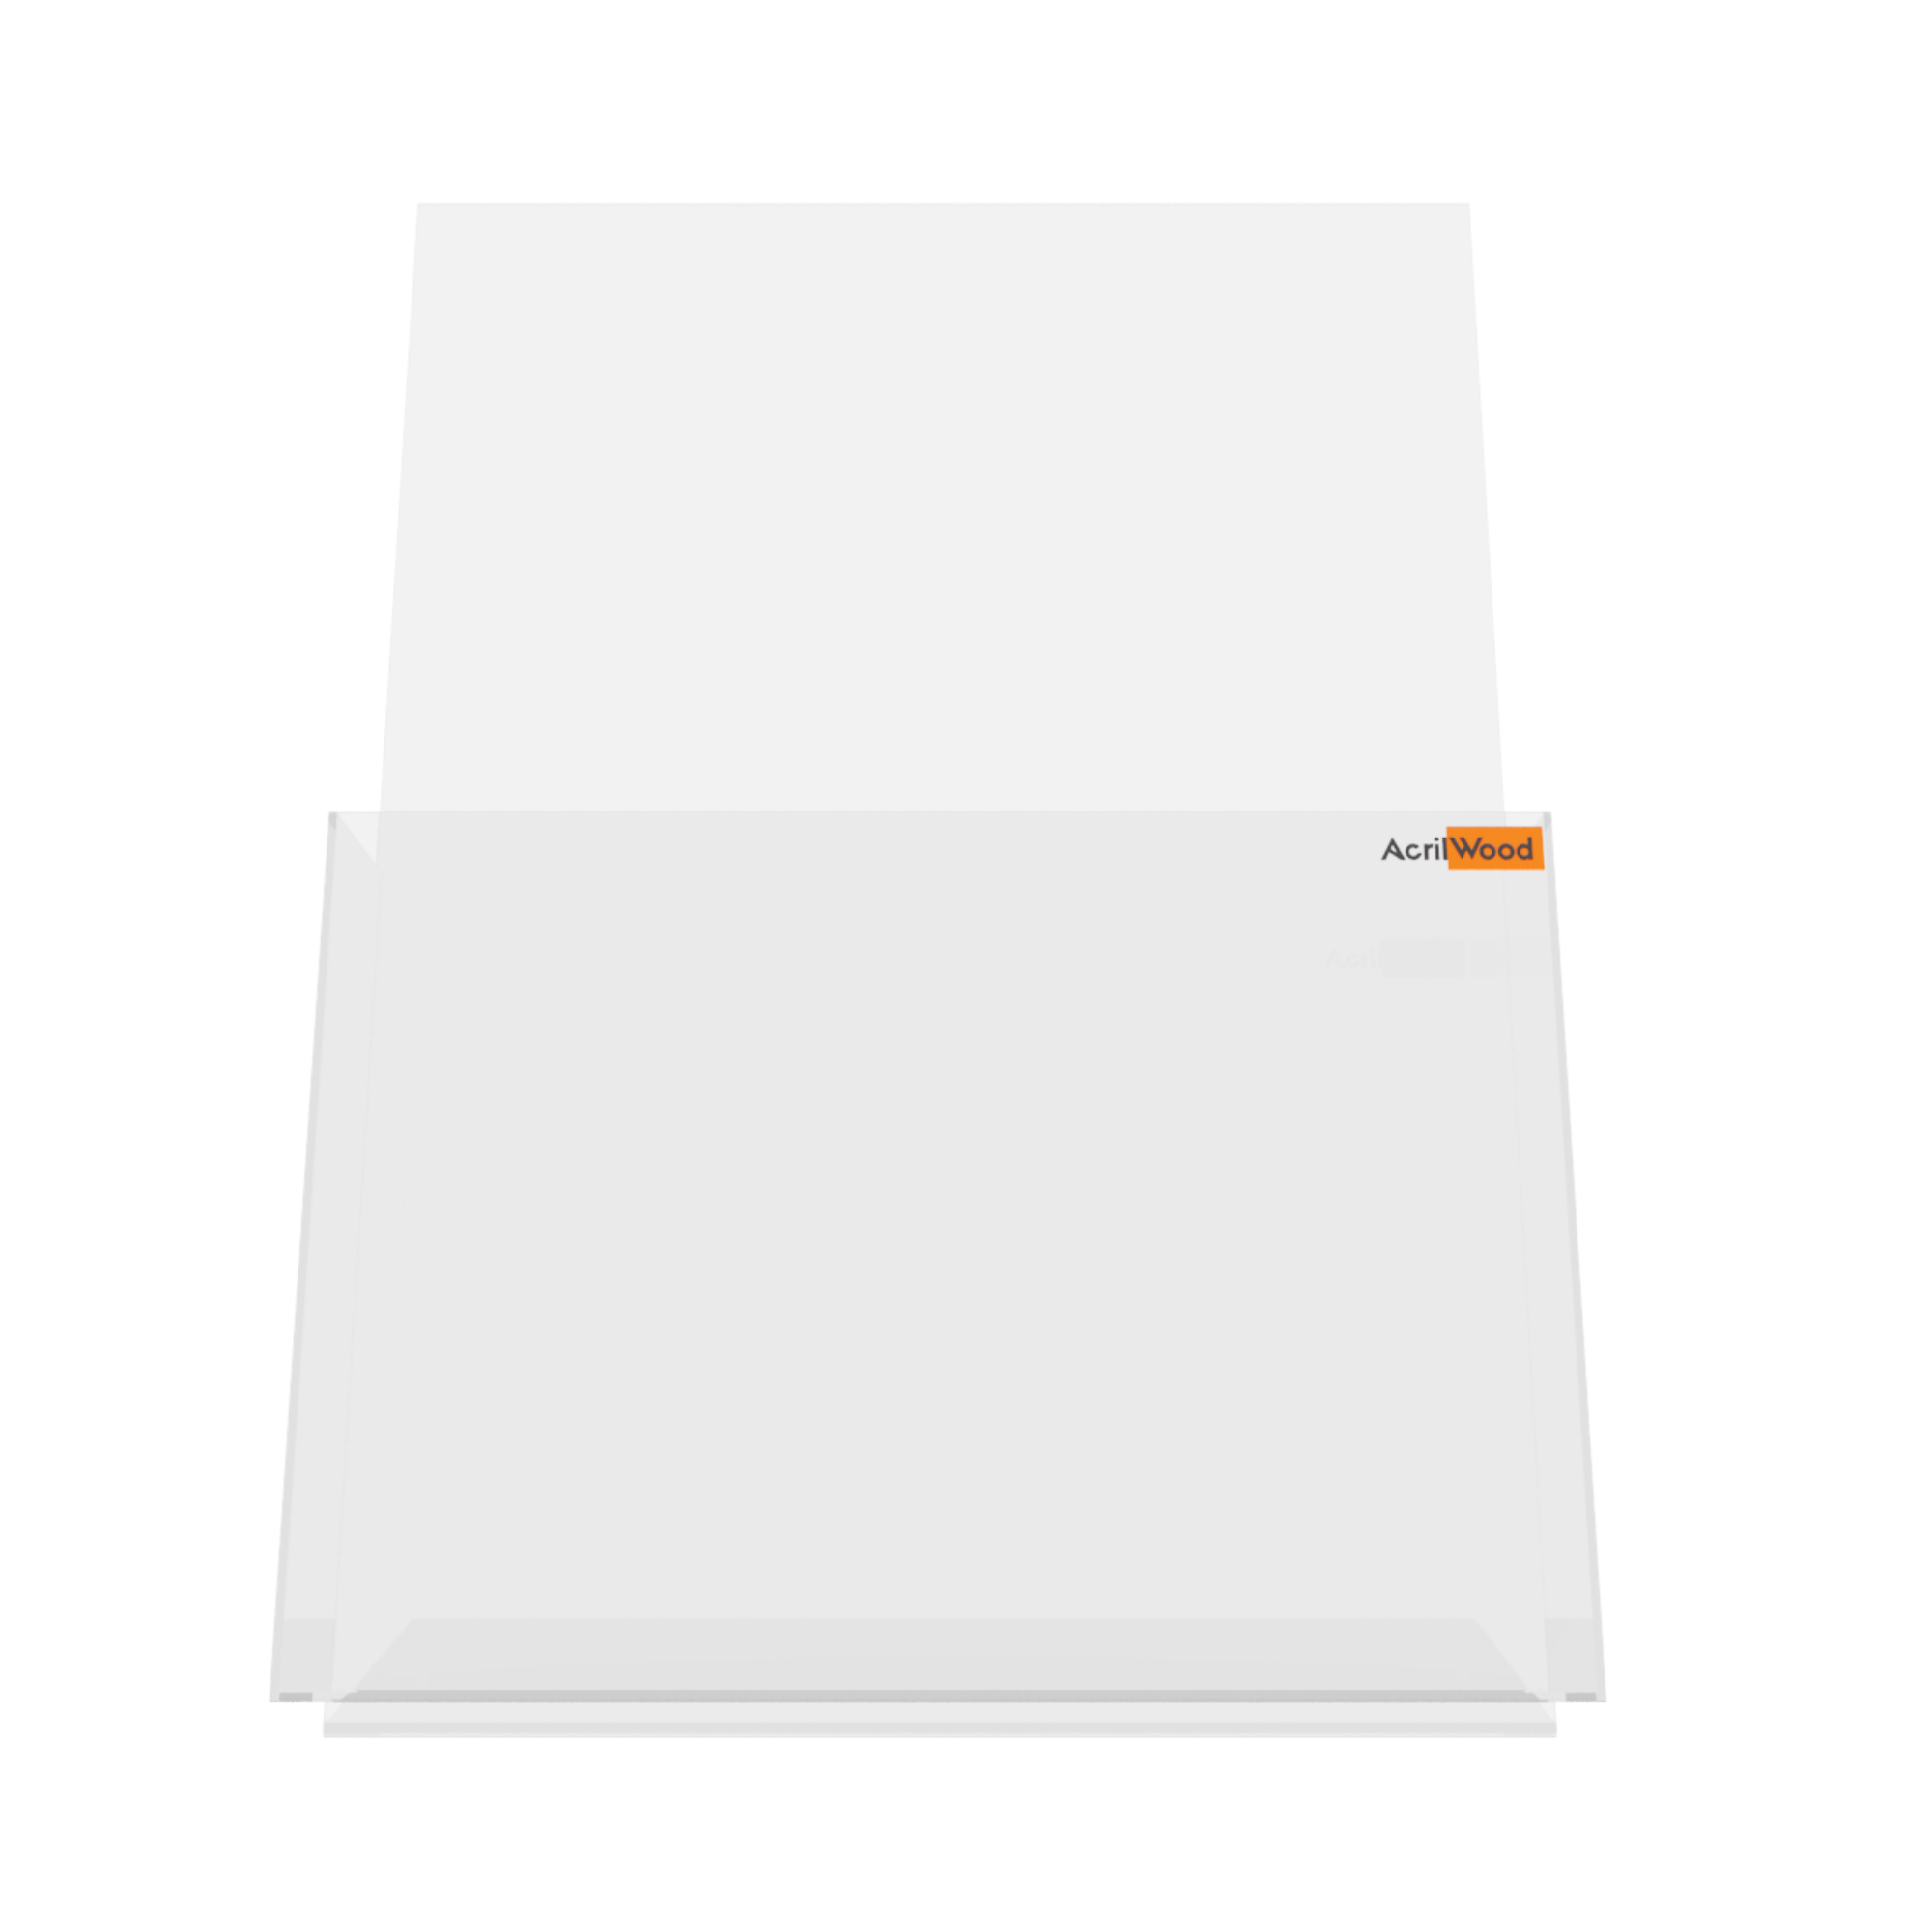 Imagem do Produto Display Porta Folder A3 em Acrílico de Balcão Vertical